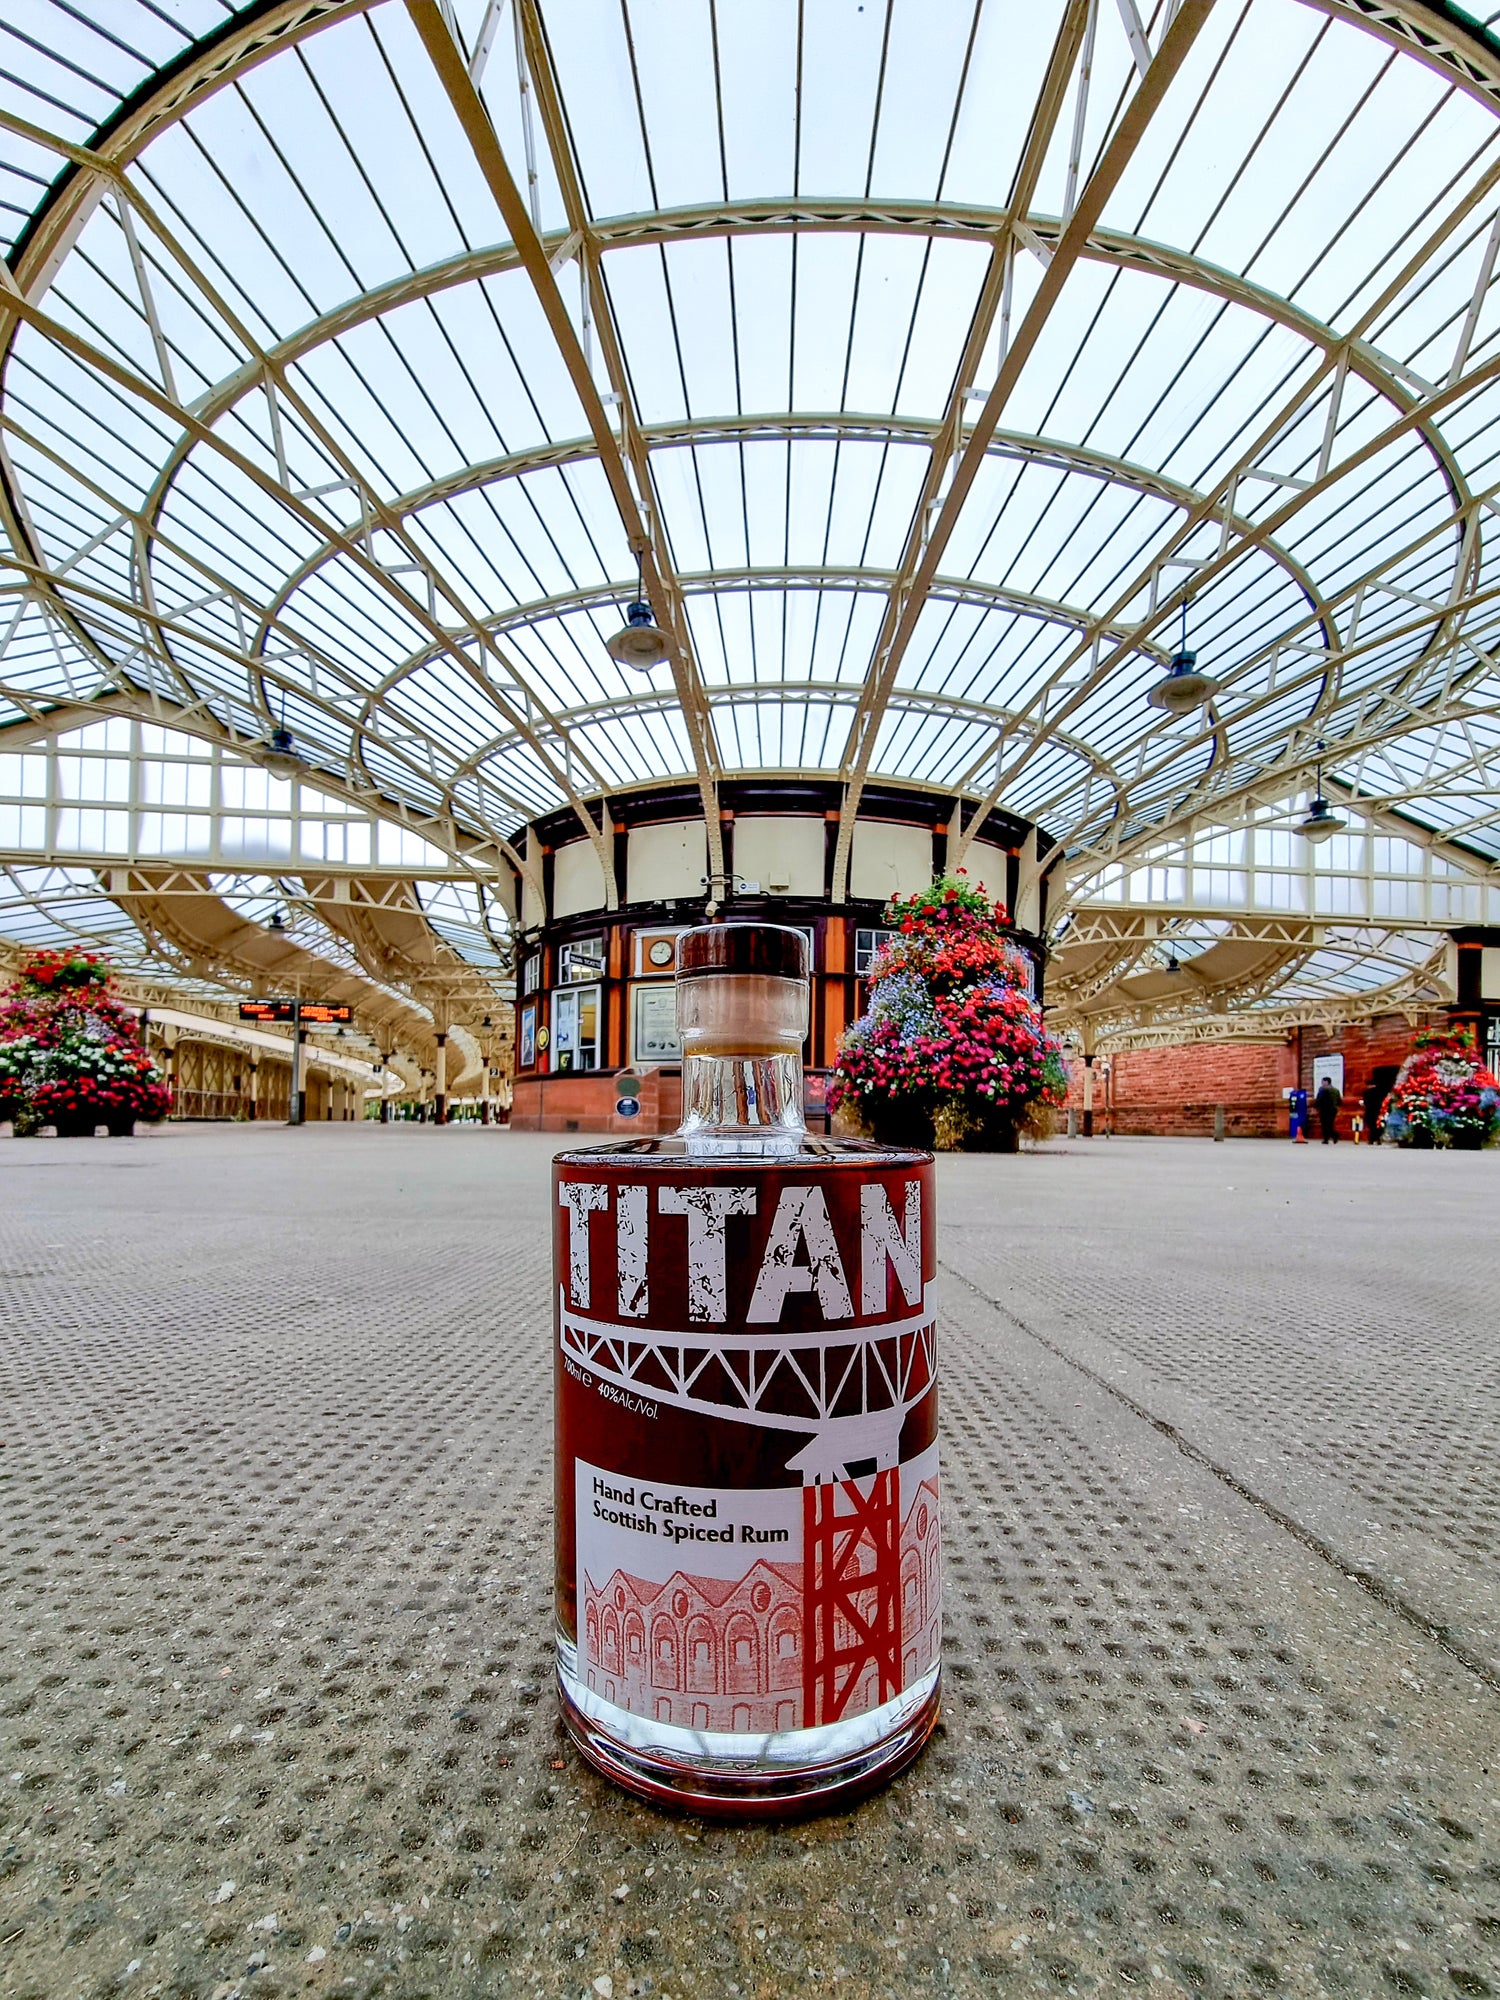 Award Winning Titan Spirits - Specialist Scottish Rum Handcrafted In Scotland